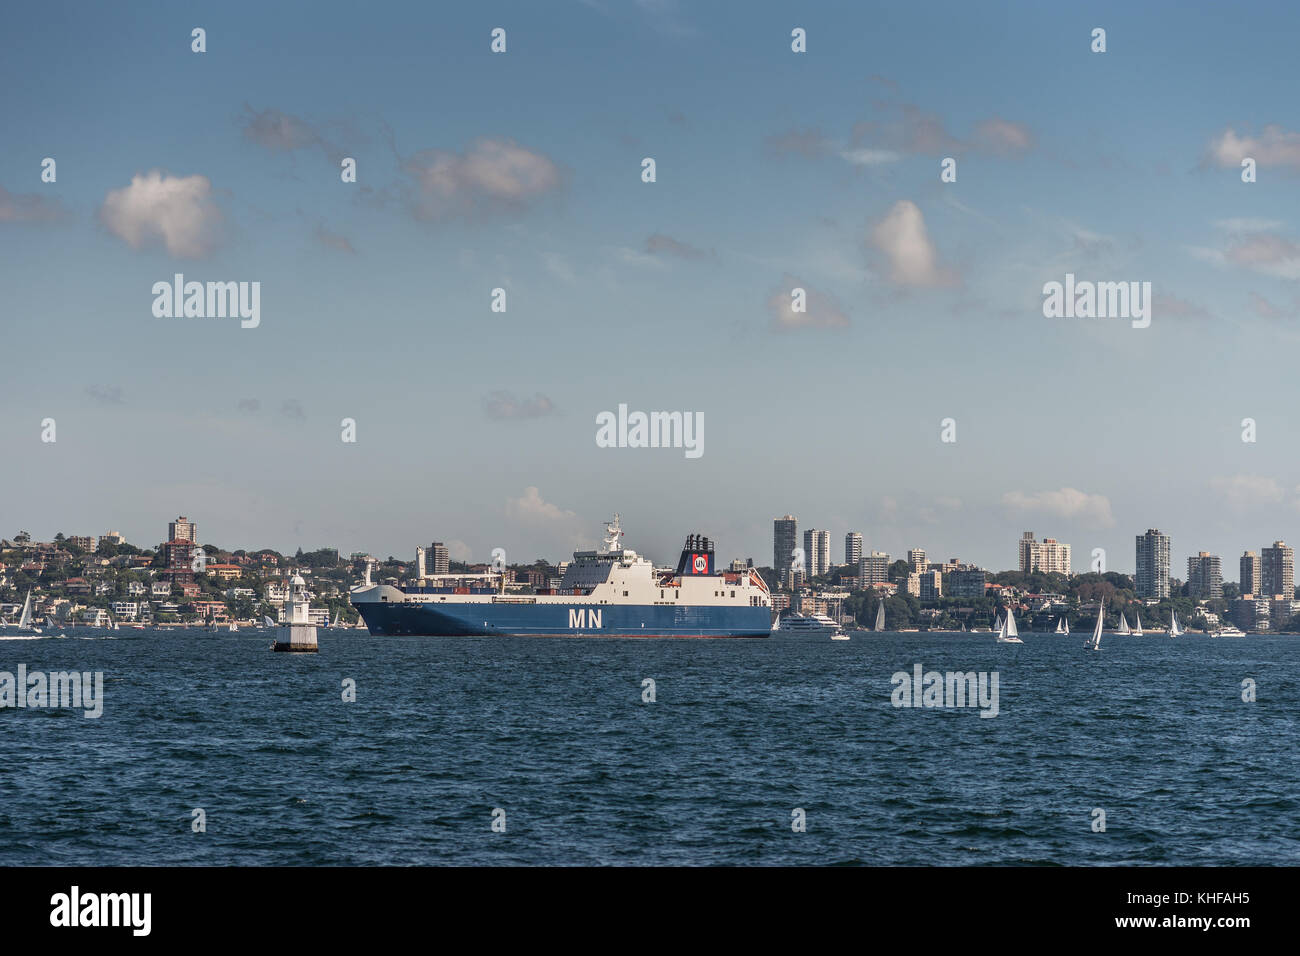 Sydney, Australien - 26. März 2017: blue white Französische mn calao Ro-ro-Frachter im Hafen von Sydney auf blauem Wasser unter freiem Himmel, mit Wohnimmobilien Stockfoto